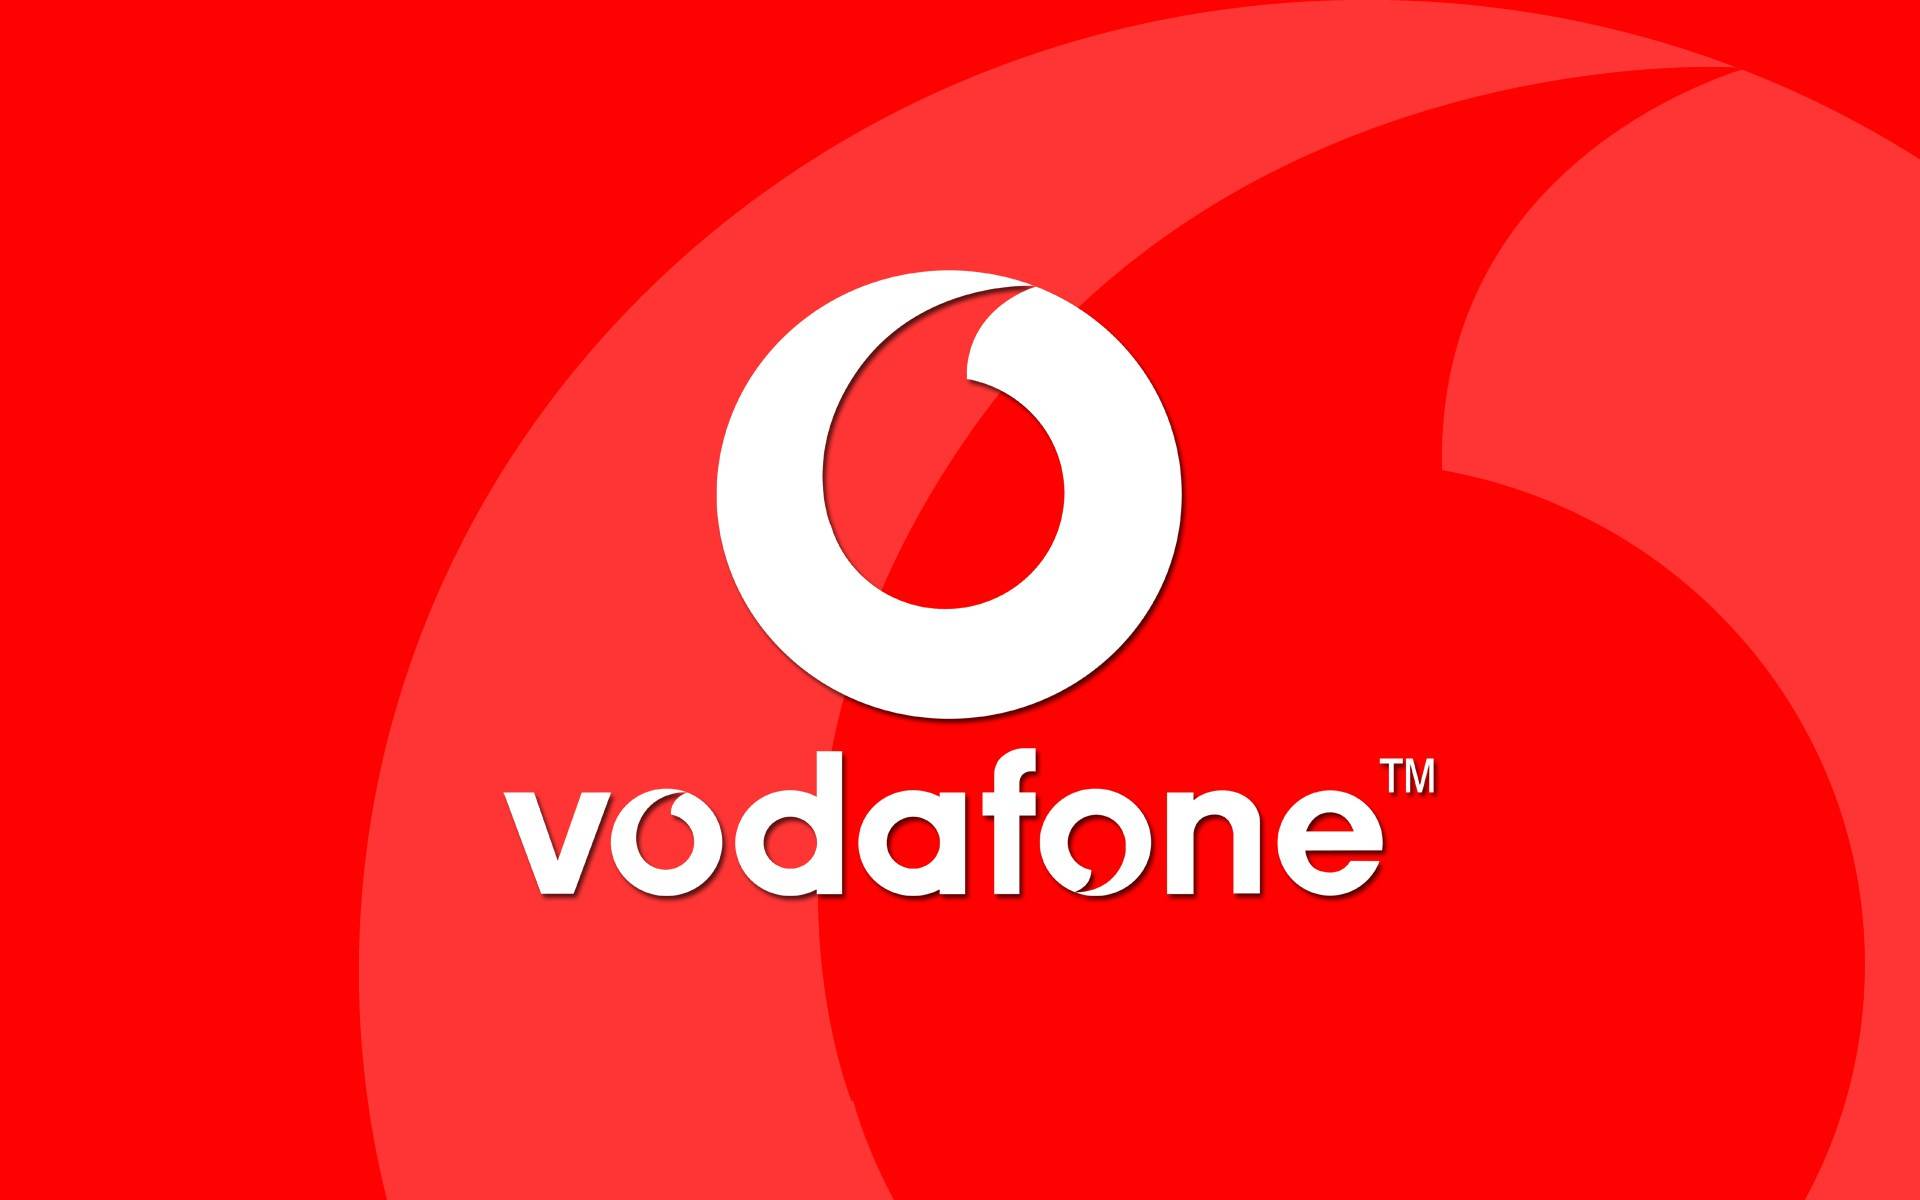 Vodafone heeft tijdens het weekend van 19 oktober zeer GROTE kortingen op telefoons